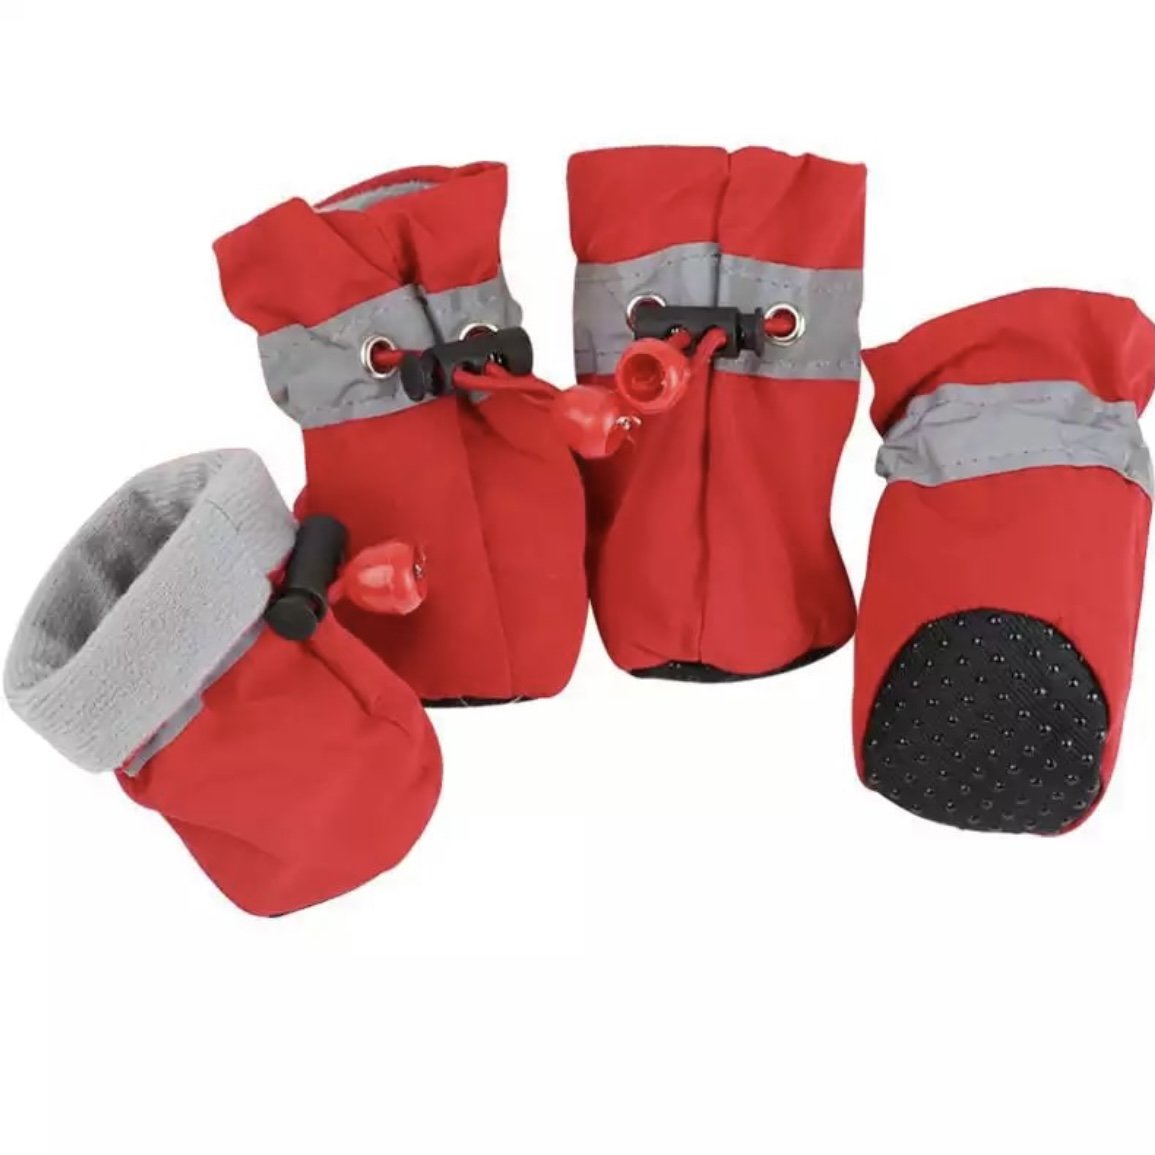 Hundeschuhe / Pfotenschutz mit Anti-Rutsch Sohle - wasserdichte Schneeschuhe für Hunde